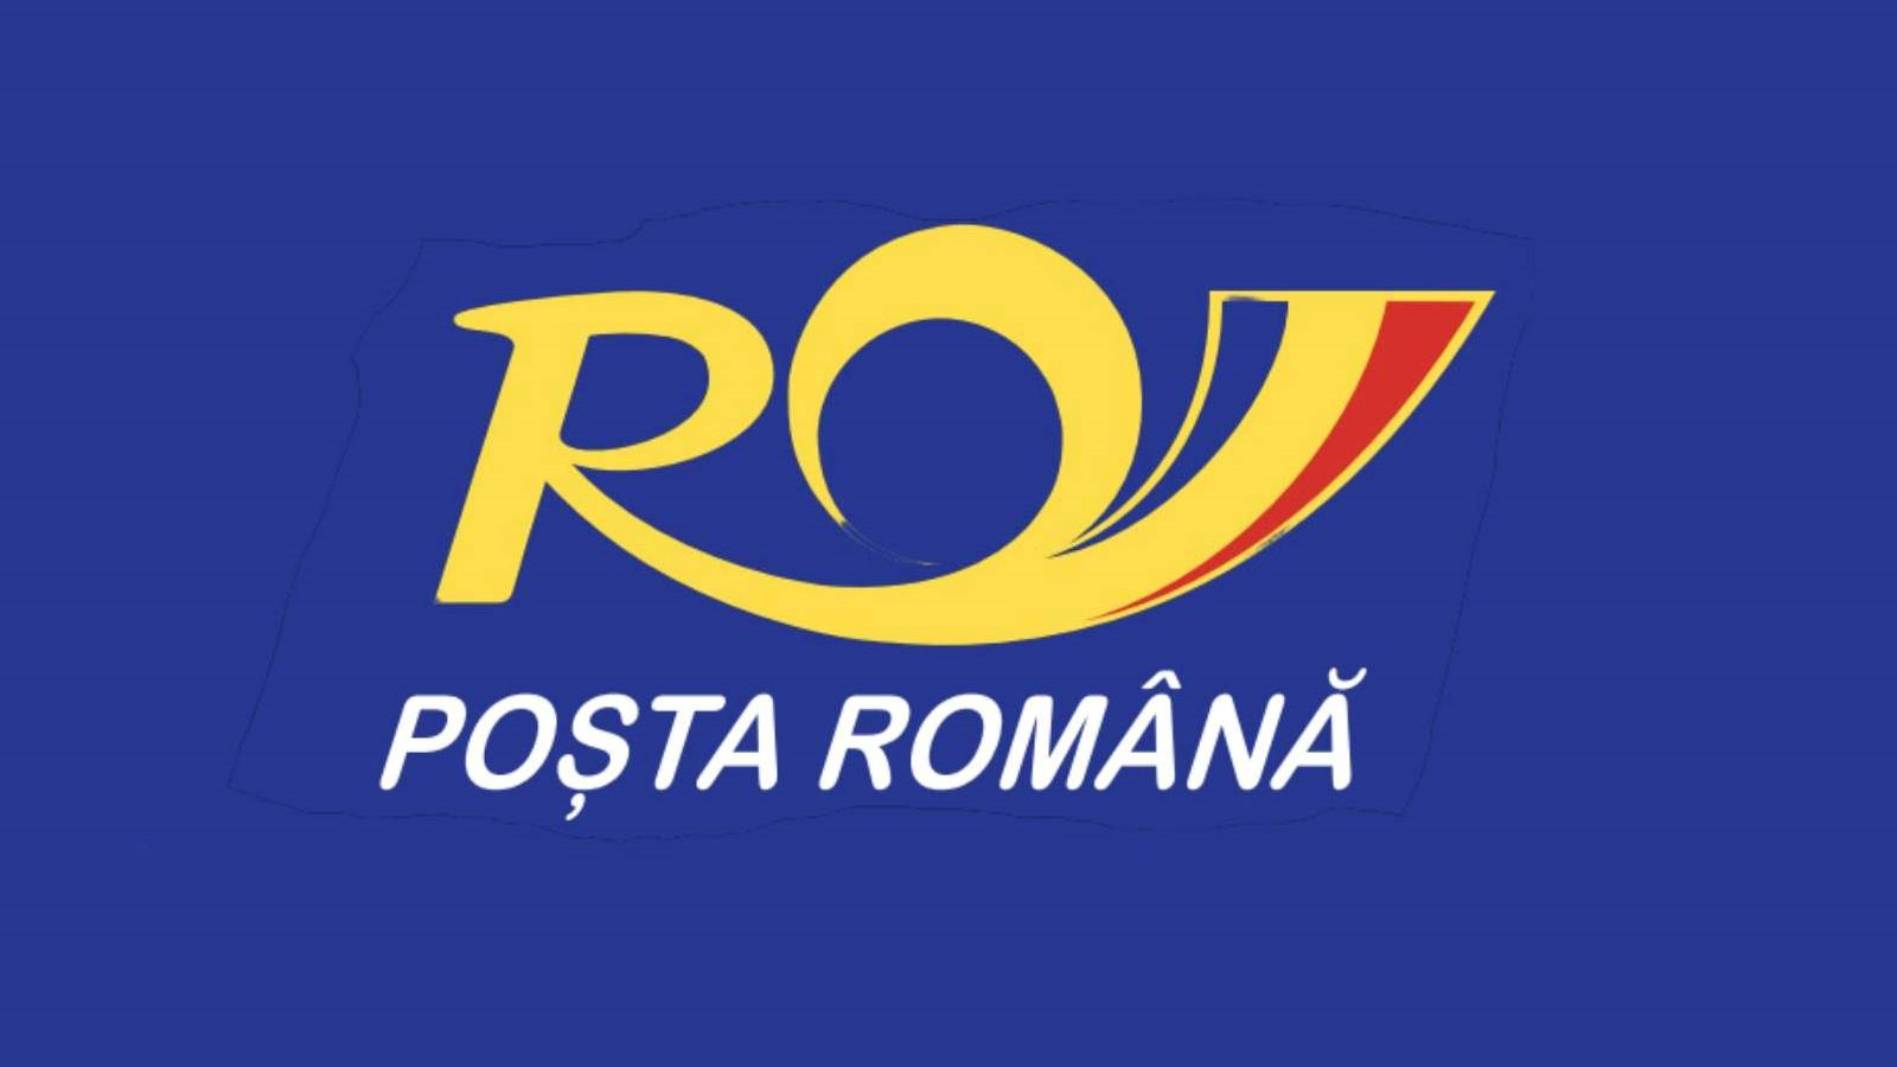 Rumänsk postlösning officiellt tillkännagiven för MILJONER rumäner